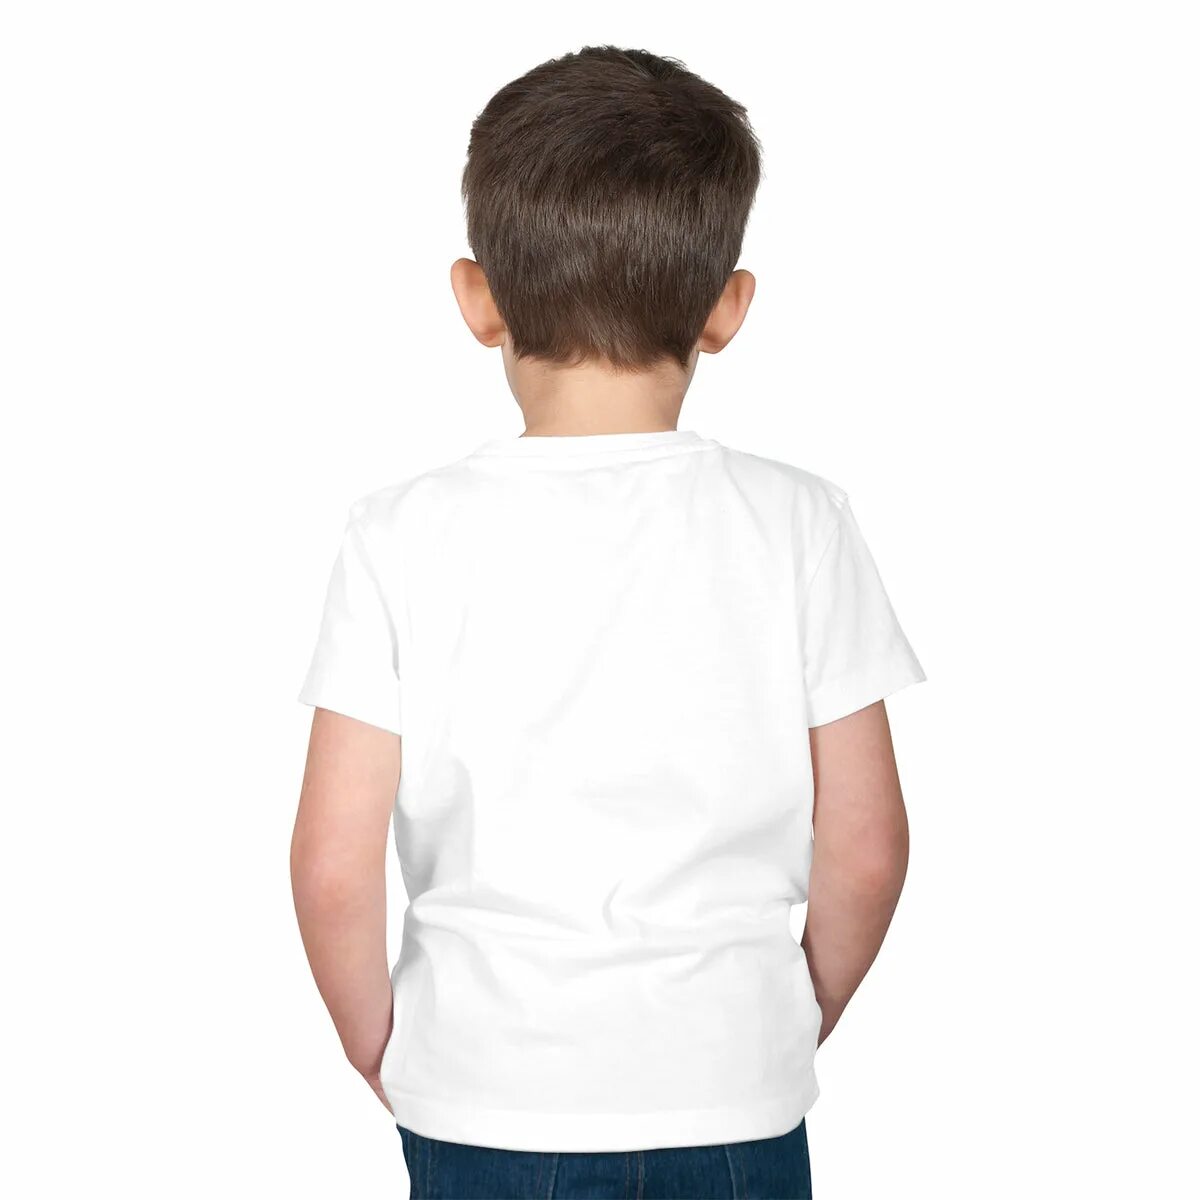 Мальчик спереди. Ребенок в белой футболке.